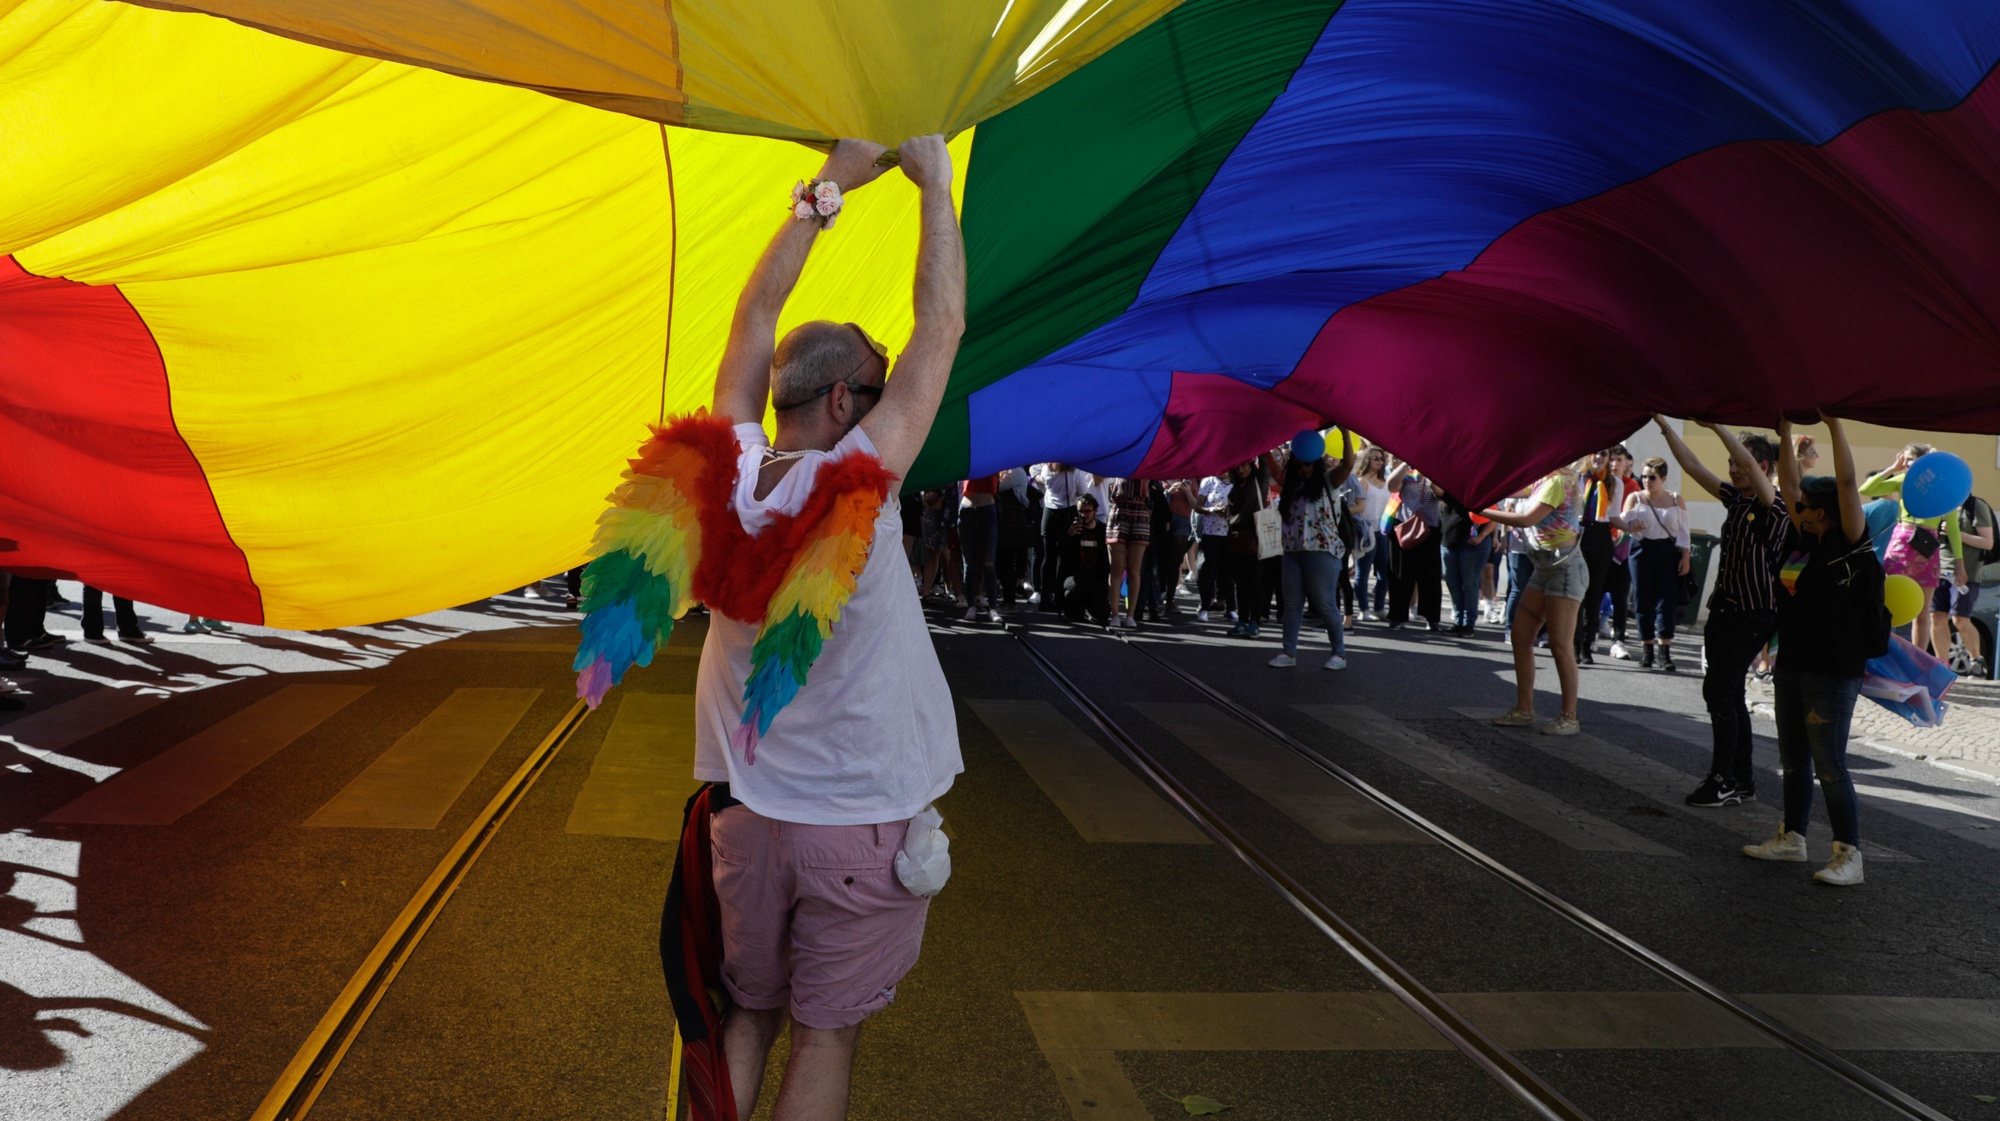 Participantes acenam uma bandeira durante a 19.º Marcha do Orgulho Lésbico, Gay, Bissexual e Trans e Intersexo de Lisboa (LGBTI), que tenta sensibilizar a população para a autodeterminação da identidade de género e os direitos das pessoas LGBTI entre o Príncipe Real e a Ribeira das Naus, em Lisboa, 16 de junho de 2018. ANTÓNIO COTRIM/LUSA